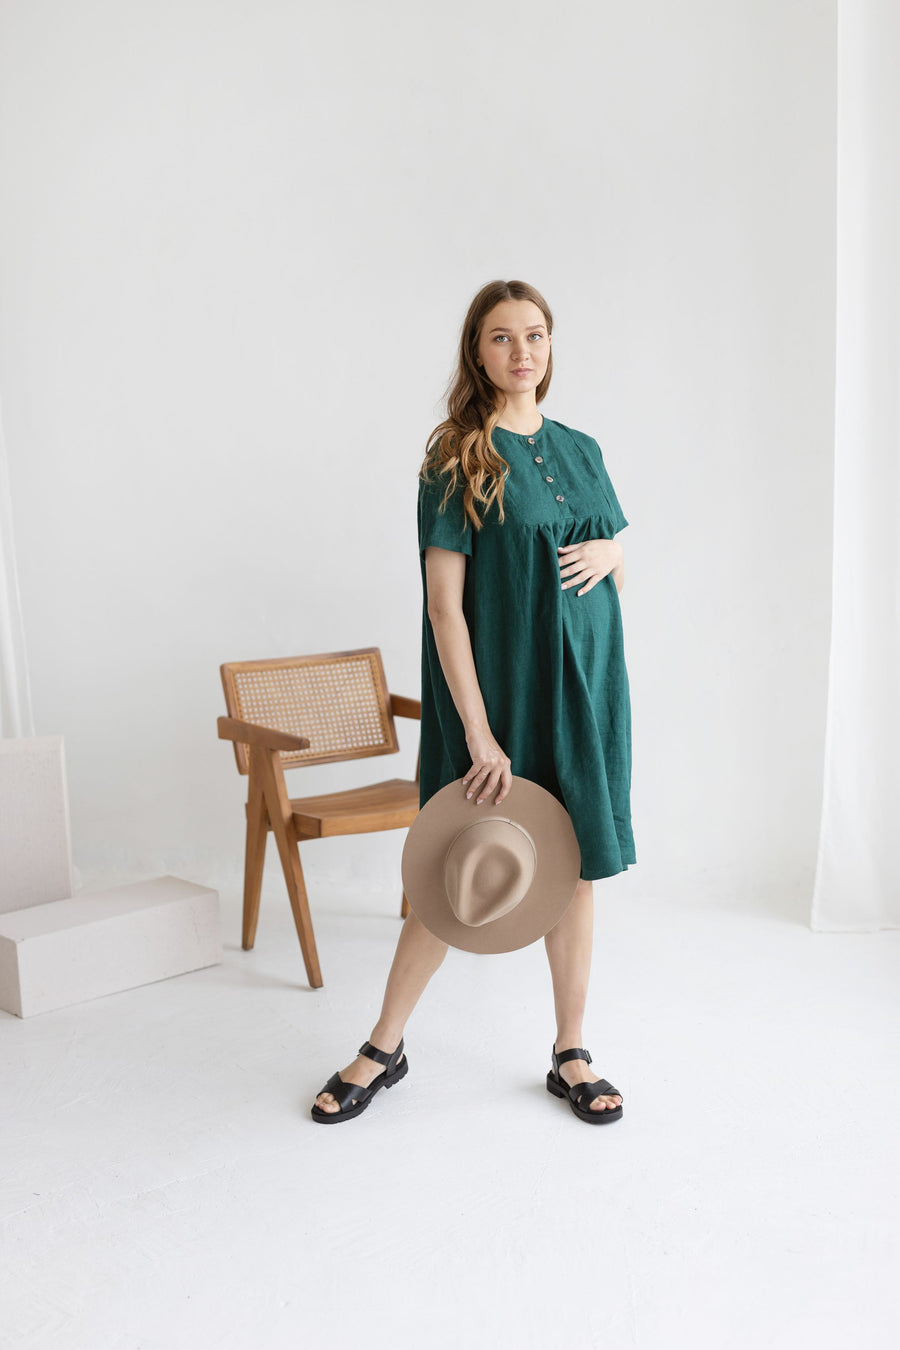 Emerald Linen Maternity Dress